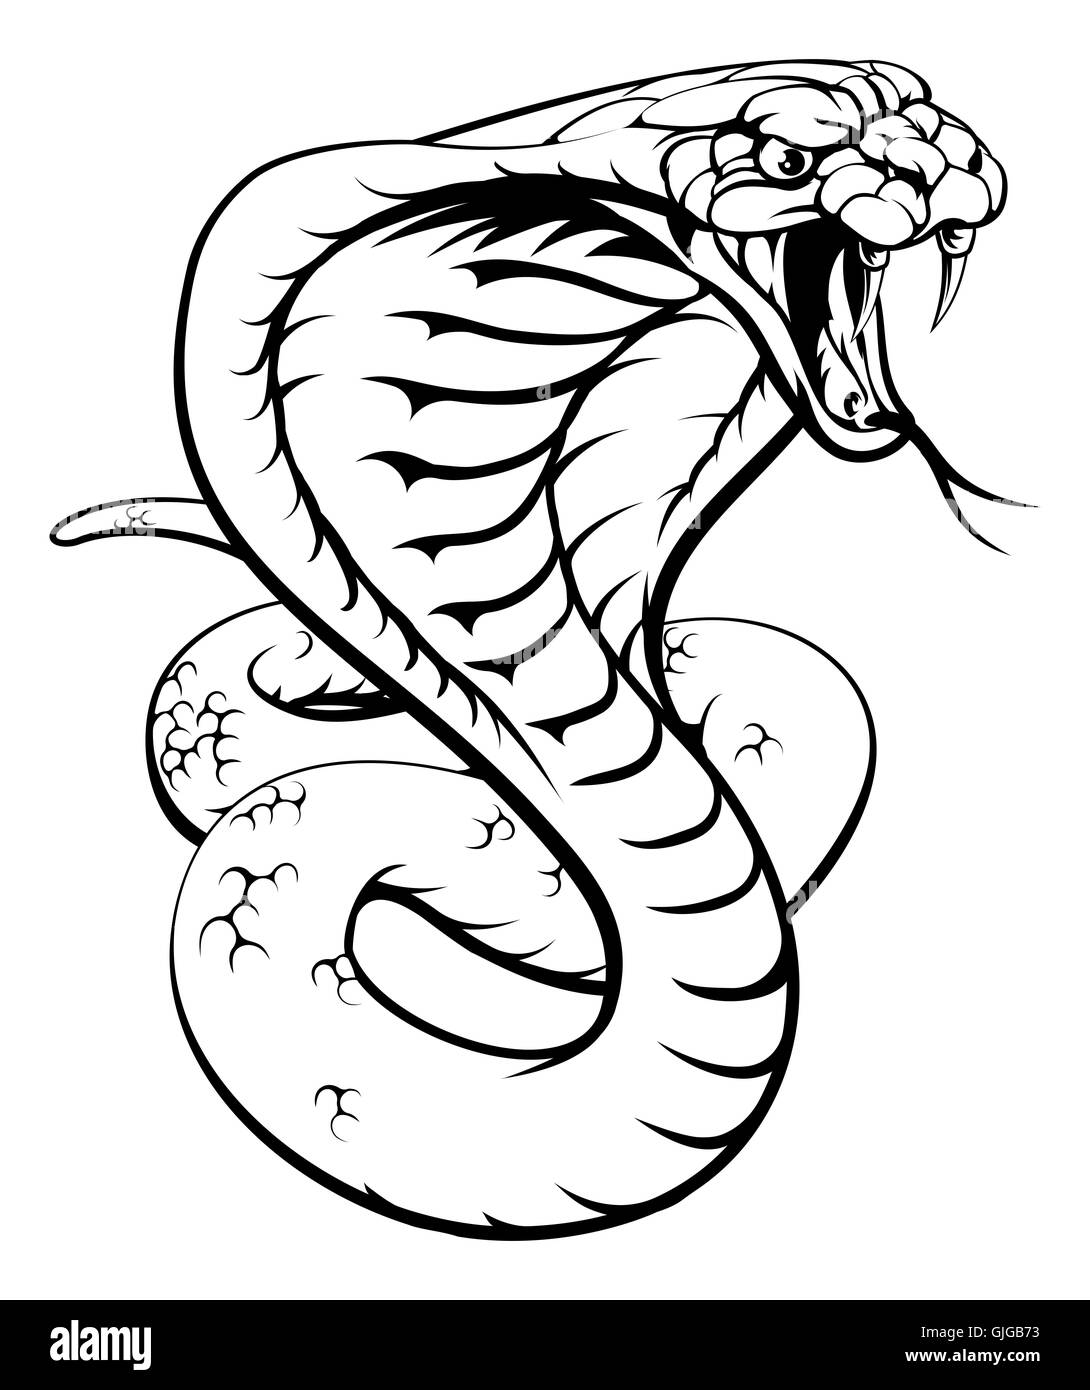 Una illustrazione di un re cobra snake in bianco e nero Foto Stock